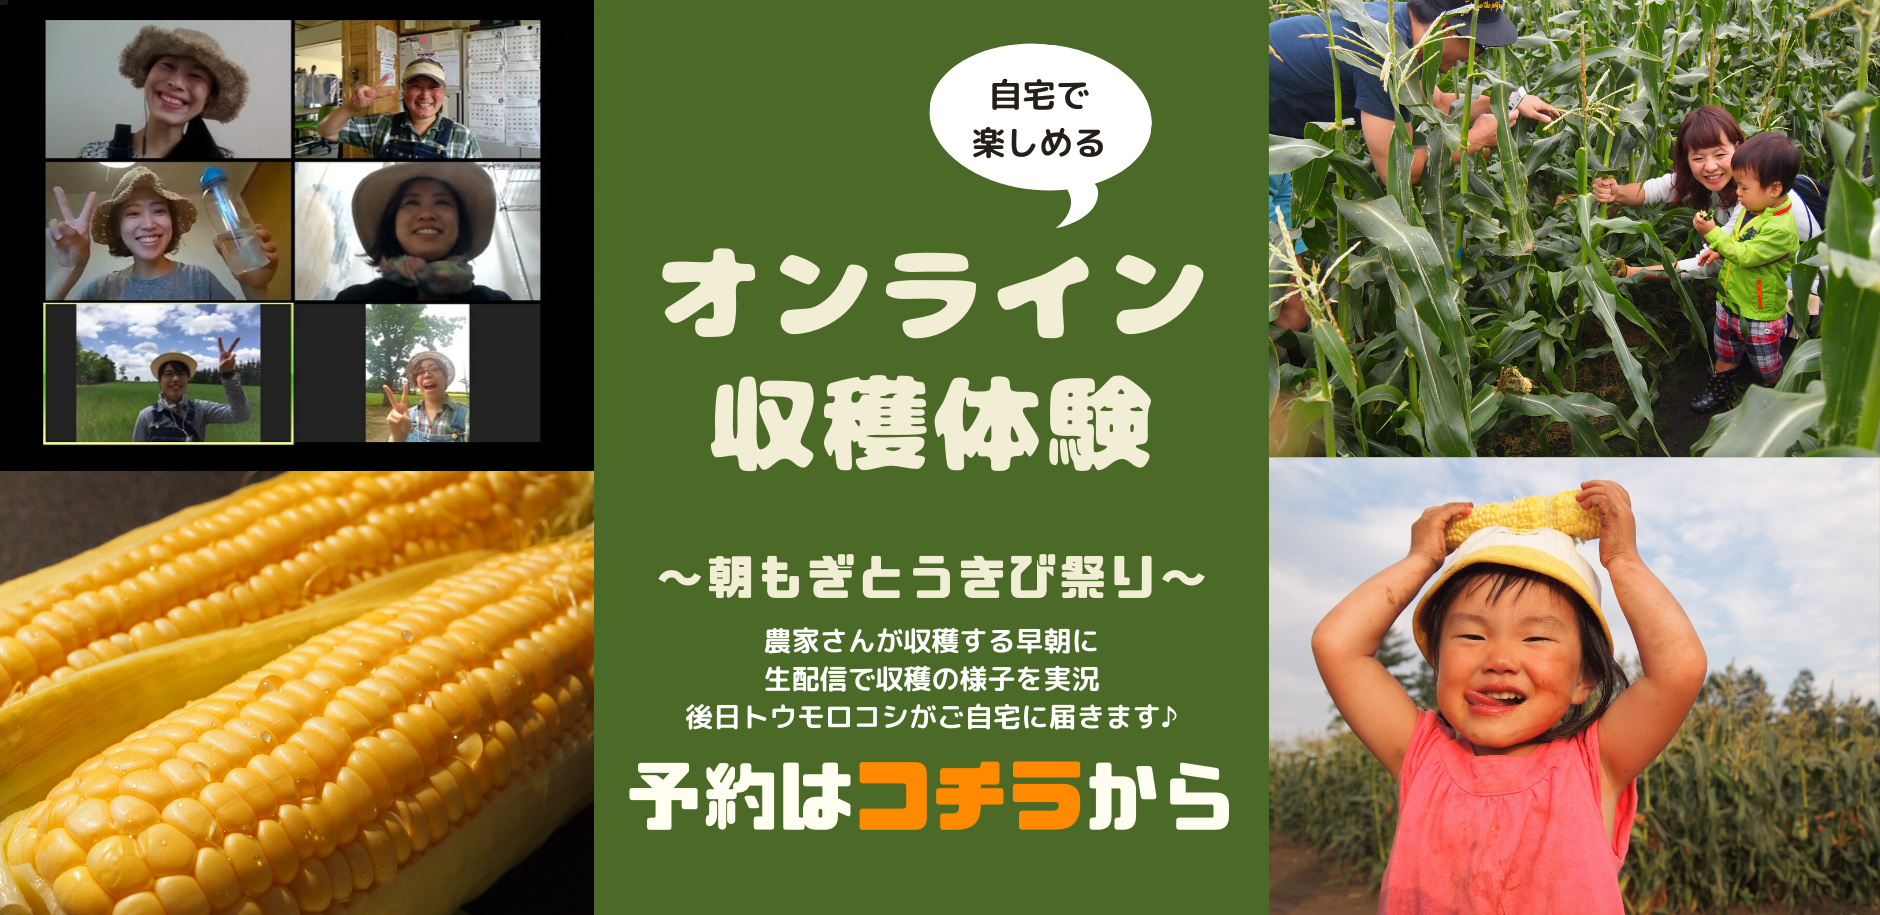 【ライブ配信】オンライン収穫体験🎶〜朝もぎとうきび祭り〜